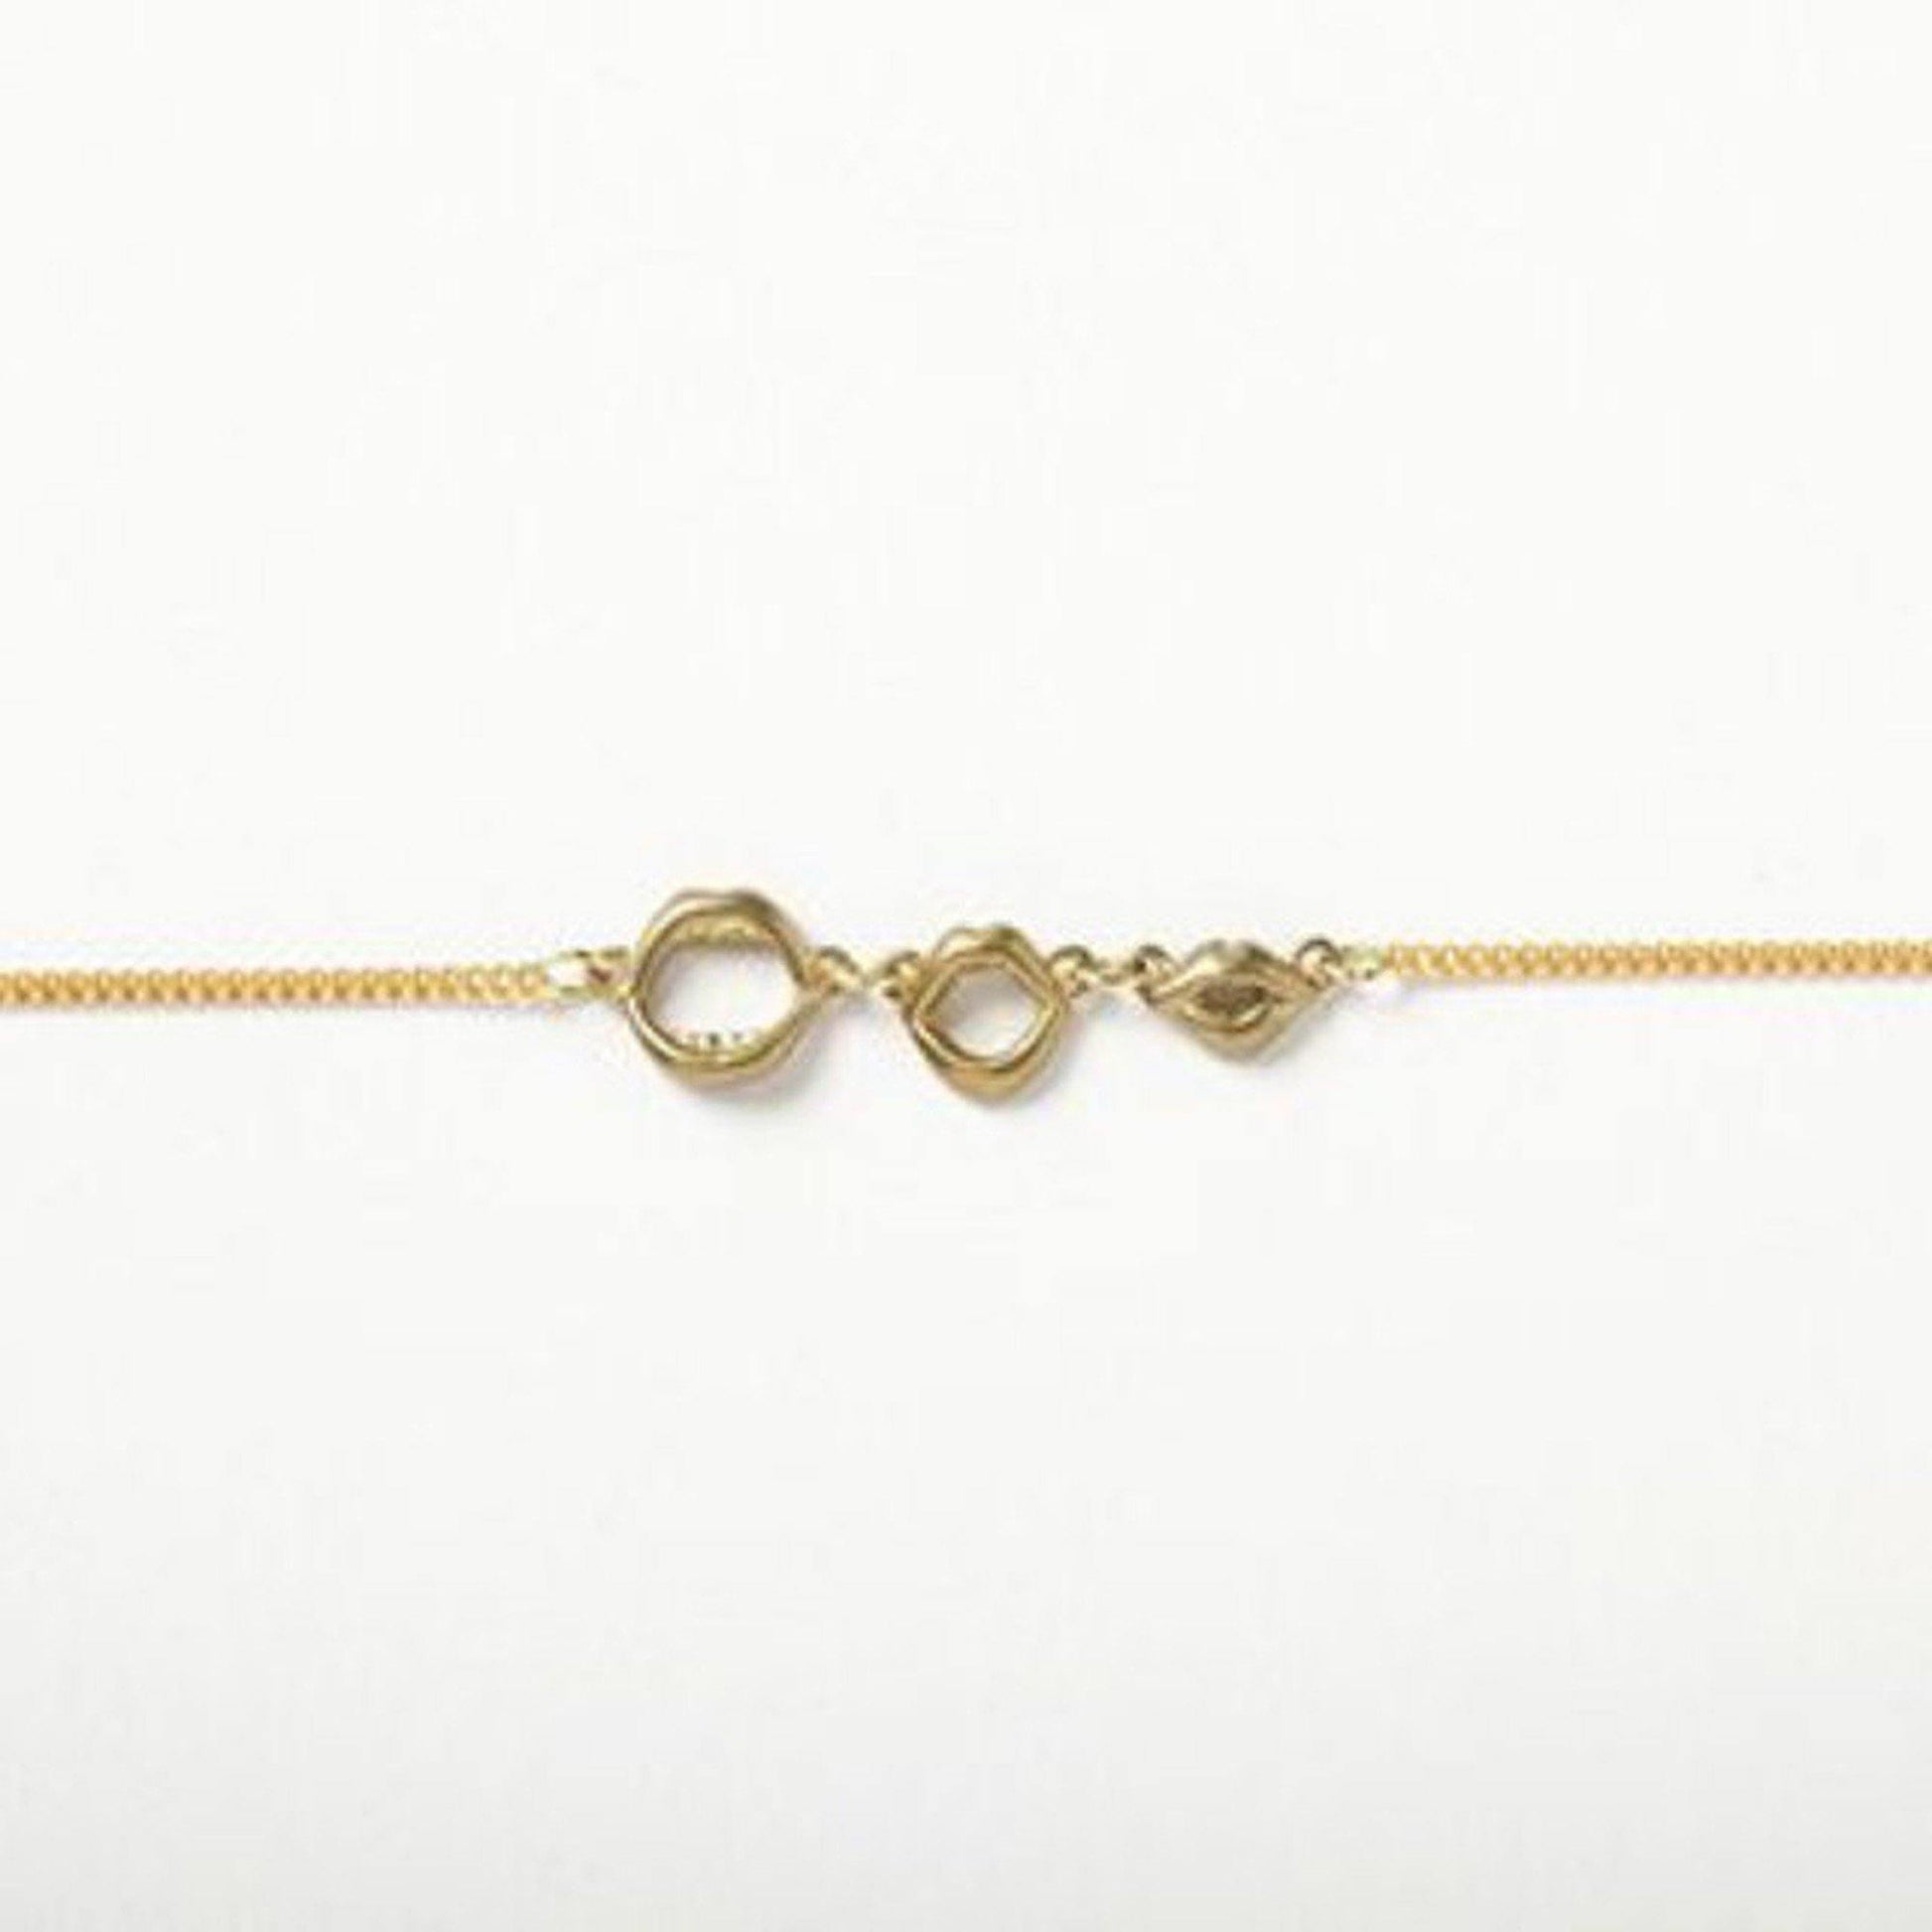 Aquvii(アクビ) | 「I Love U」と言っているような口の形をモチーフにしたネックレス I ♡ U necklace [aq.019] - Sopwith camel